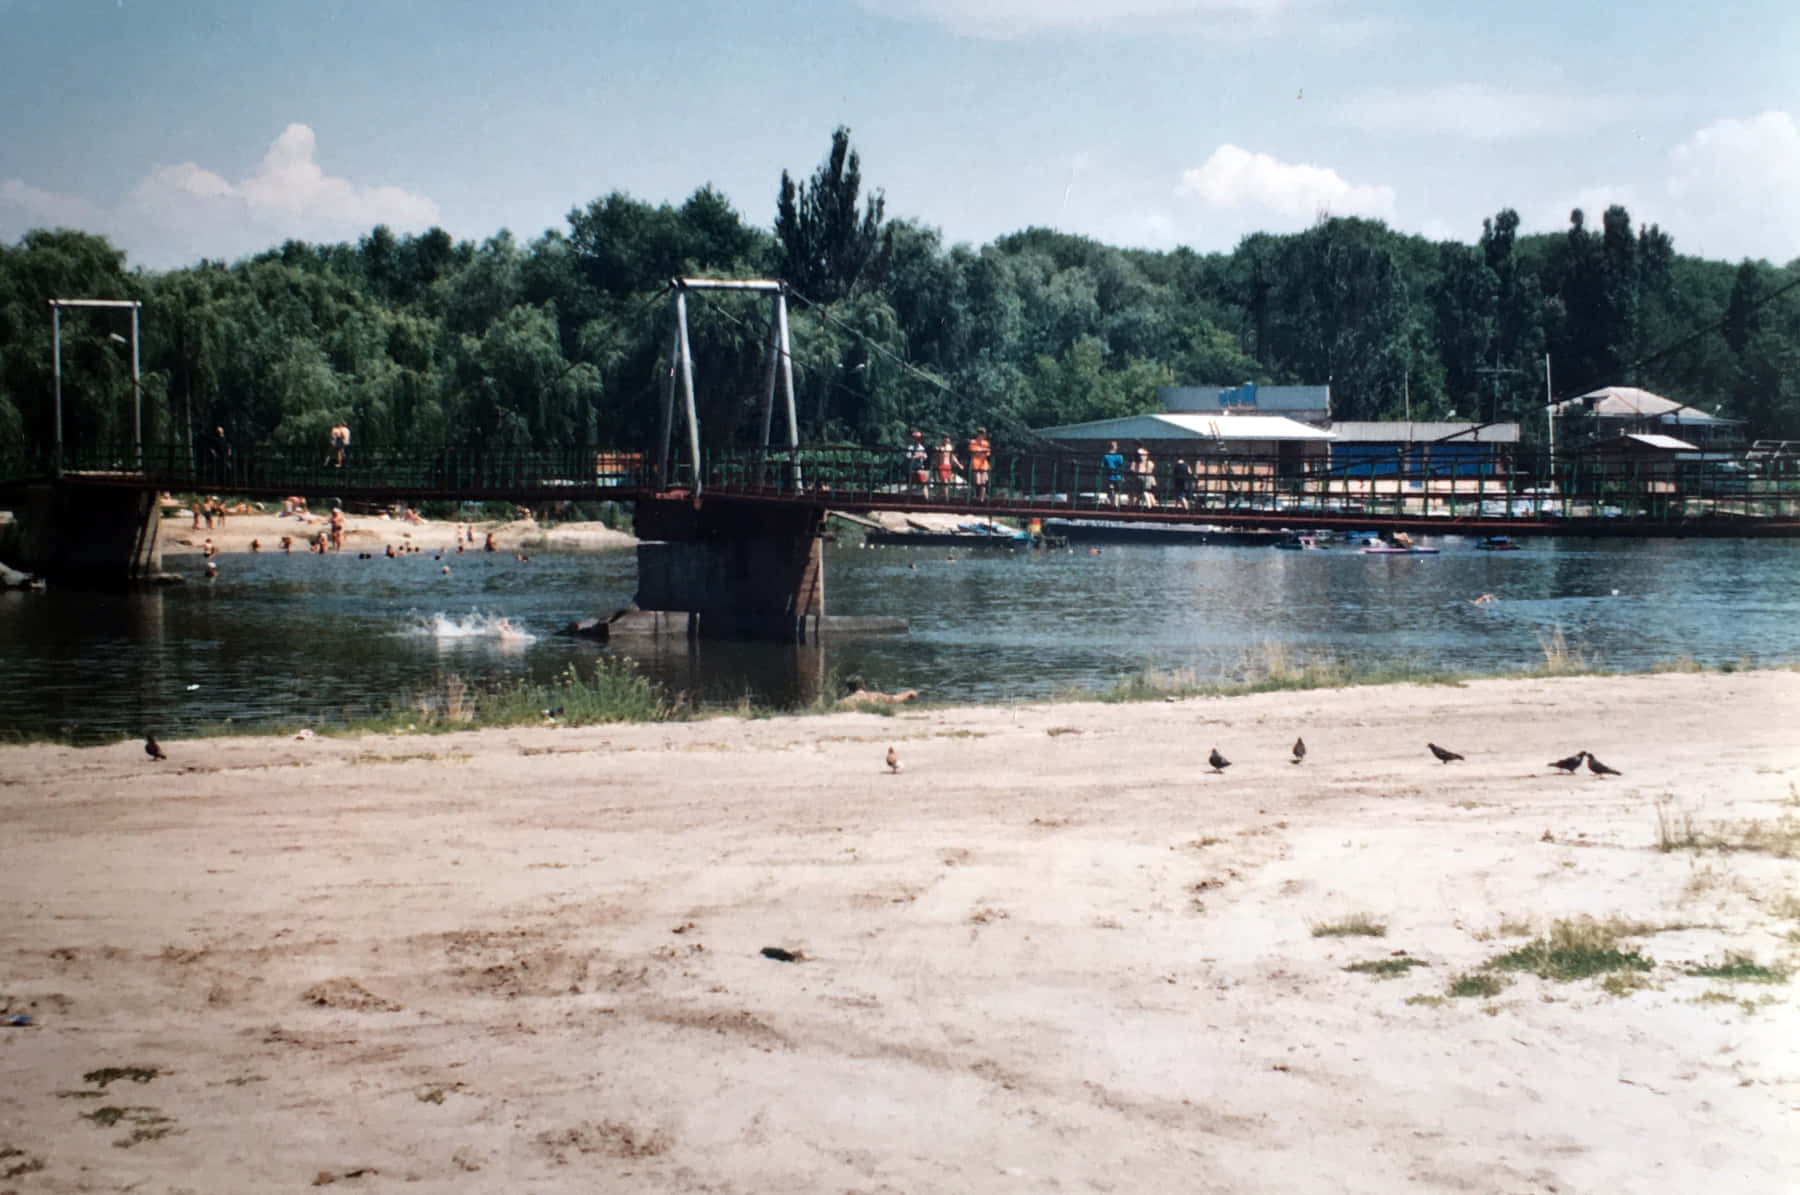 Azov, Don River